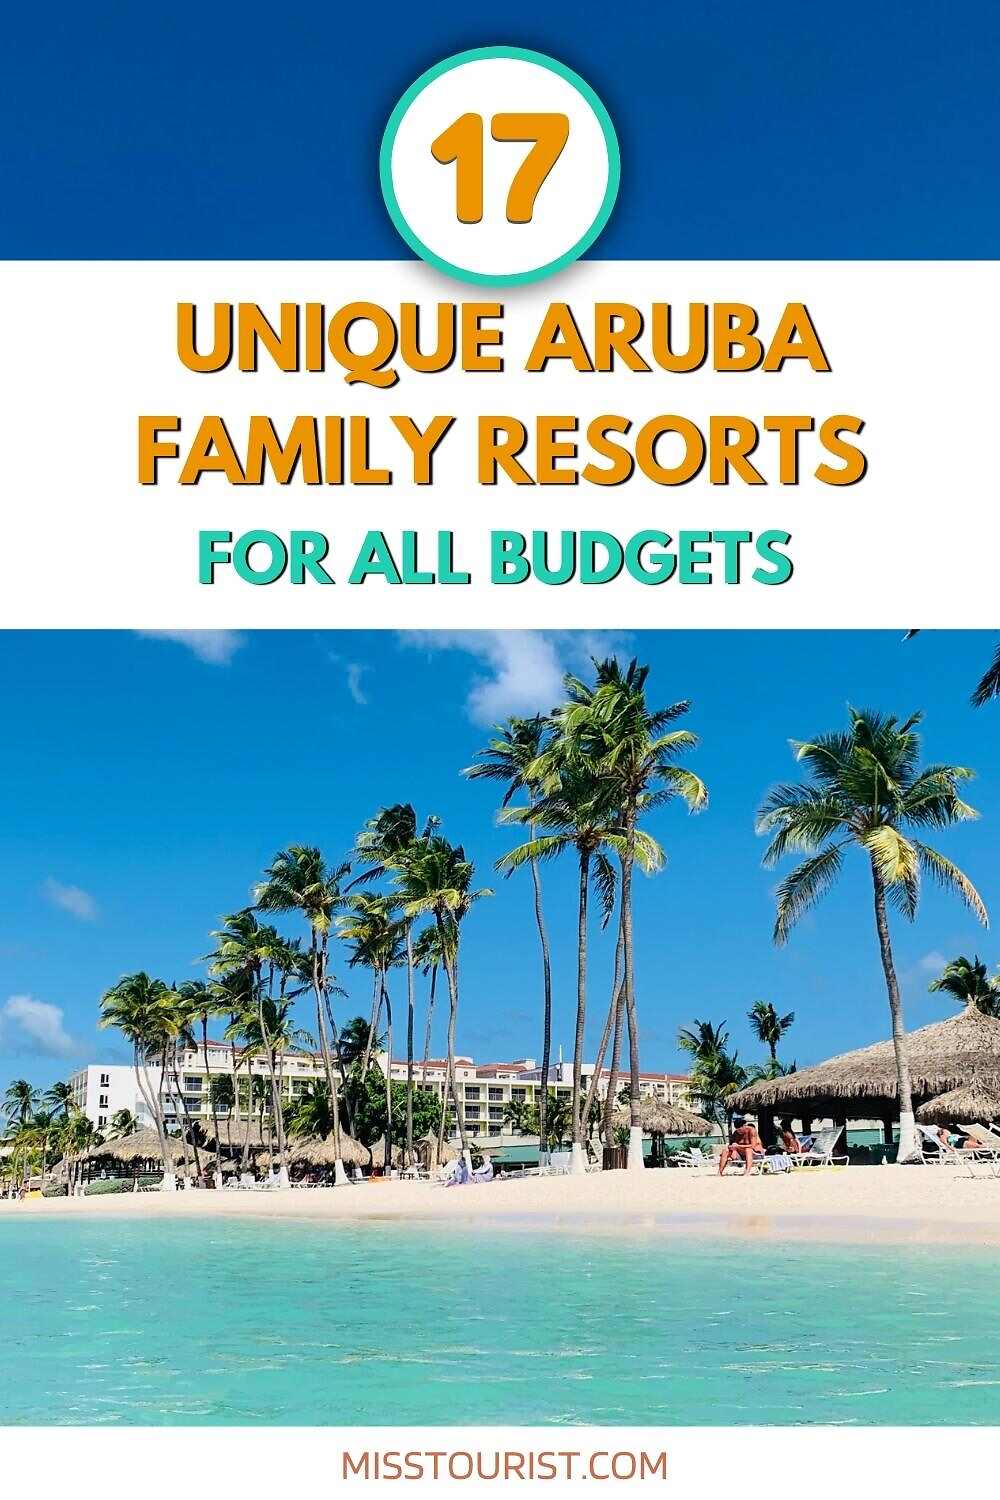 Resor keluarga Aruba PIN 2